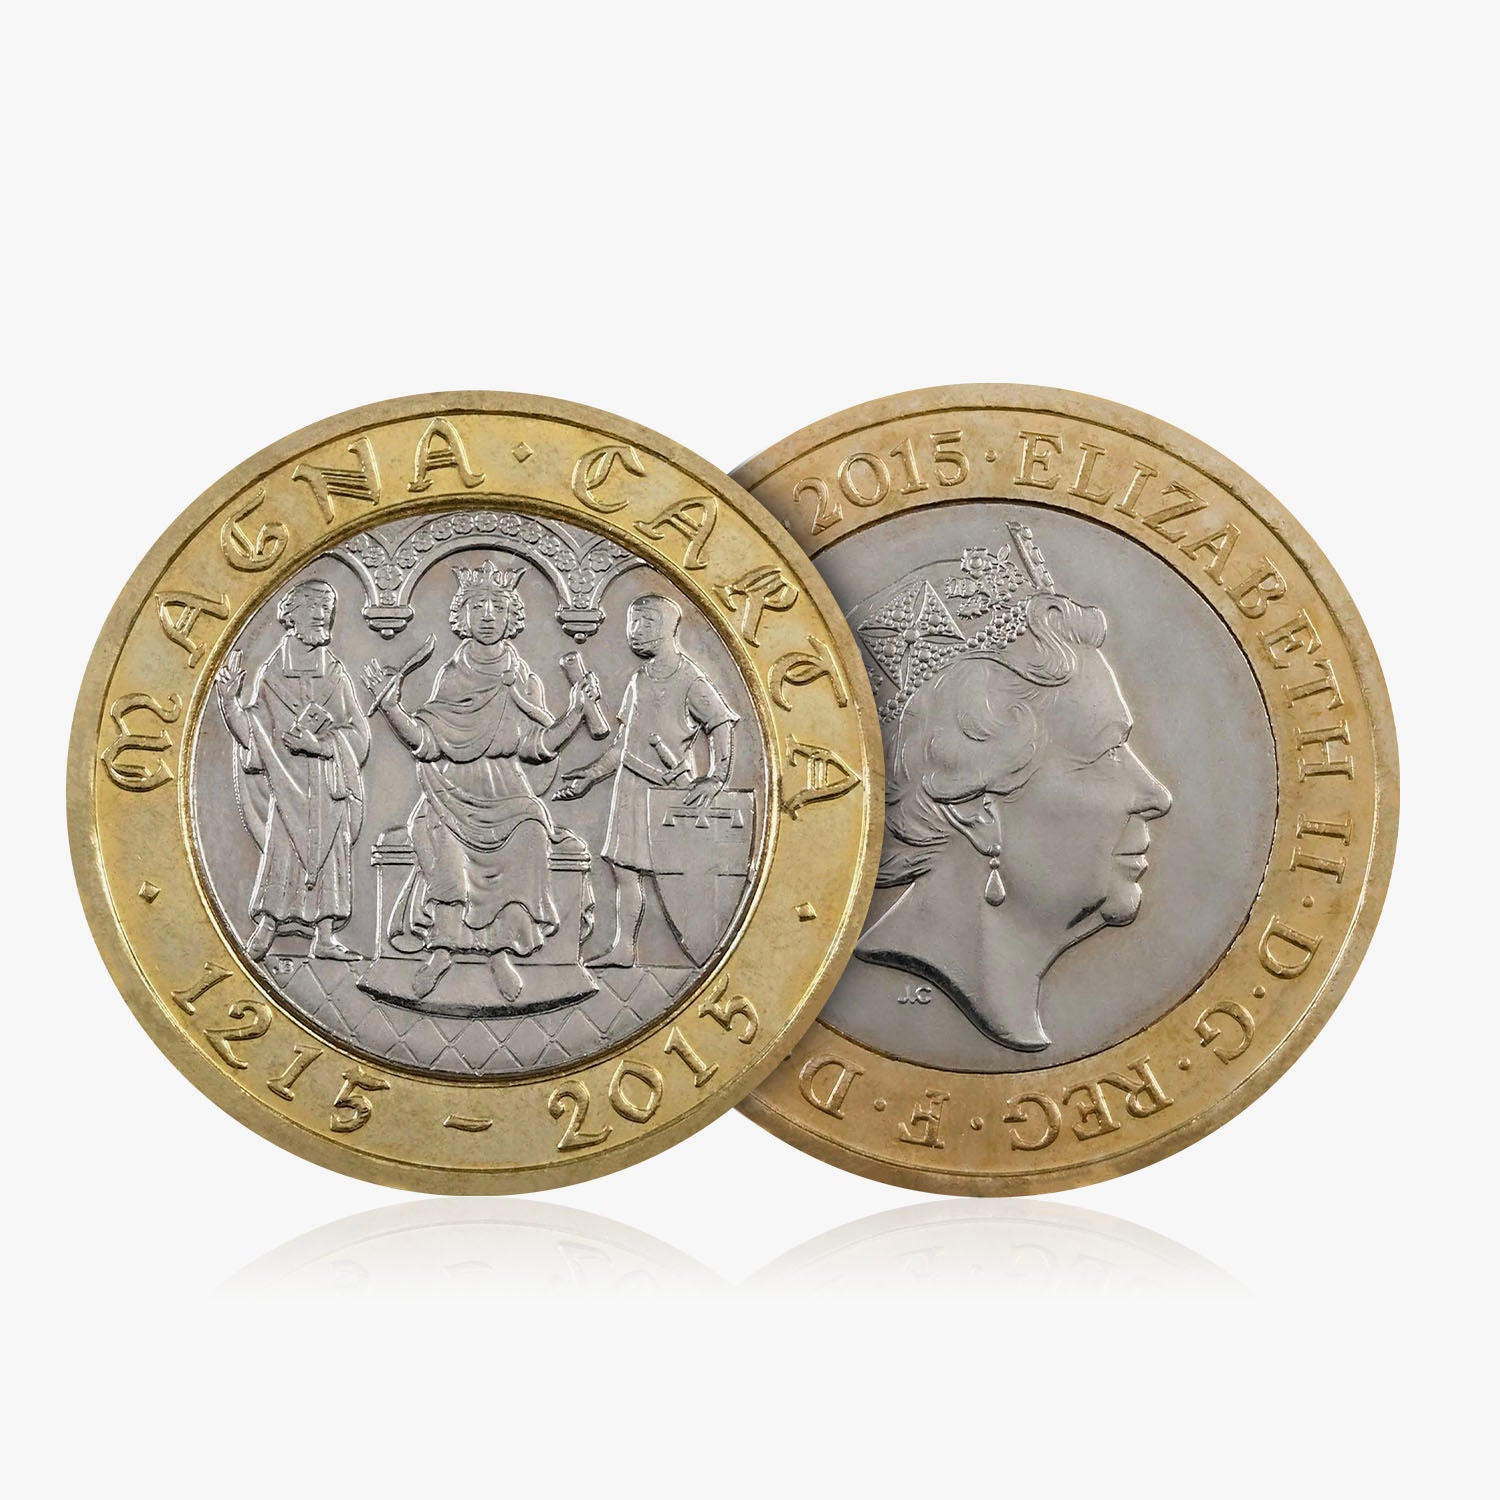 2015 Circulated Magna Carta UK £2 Coin